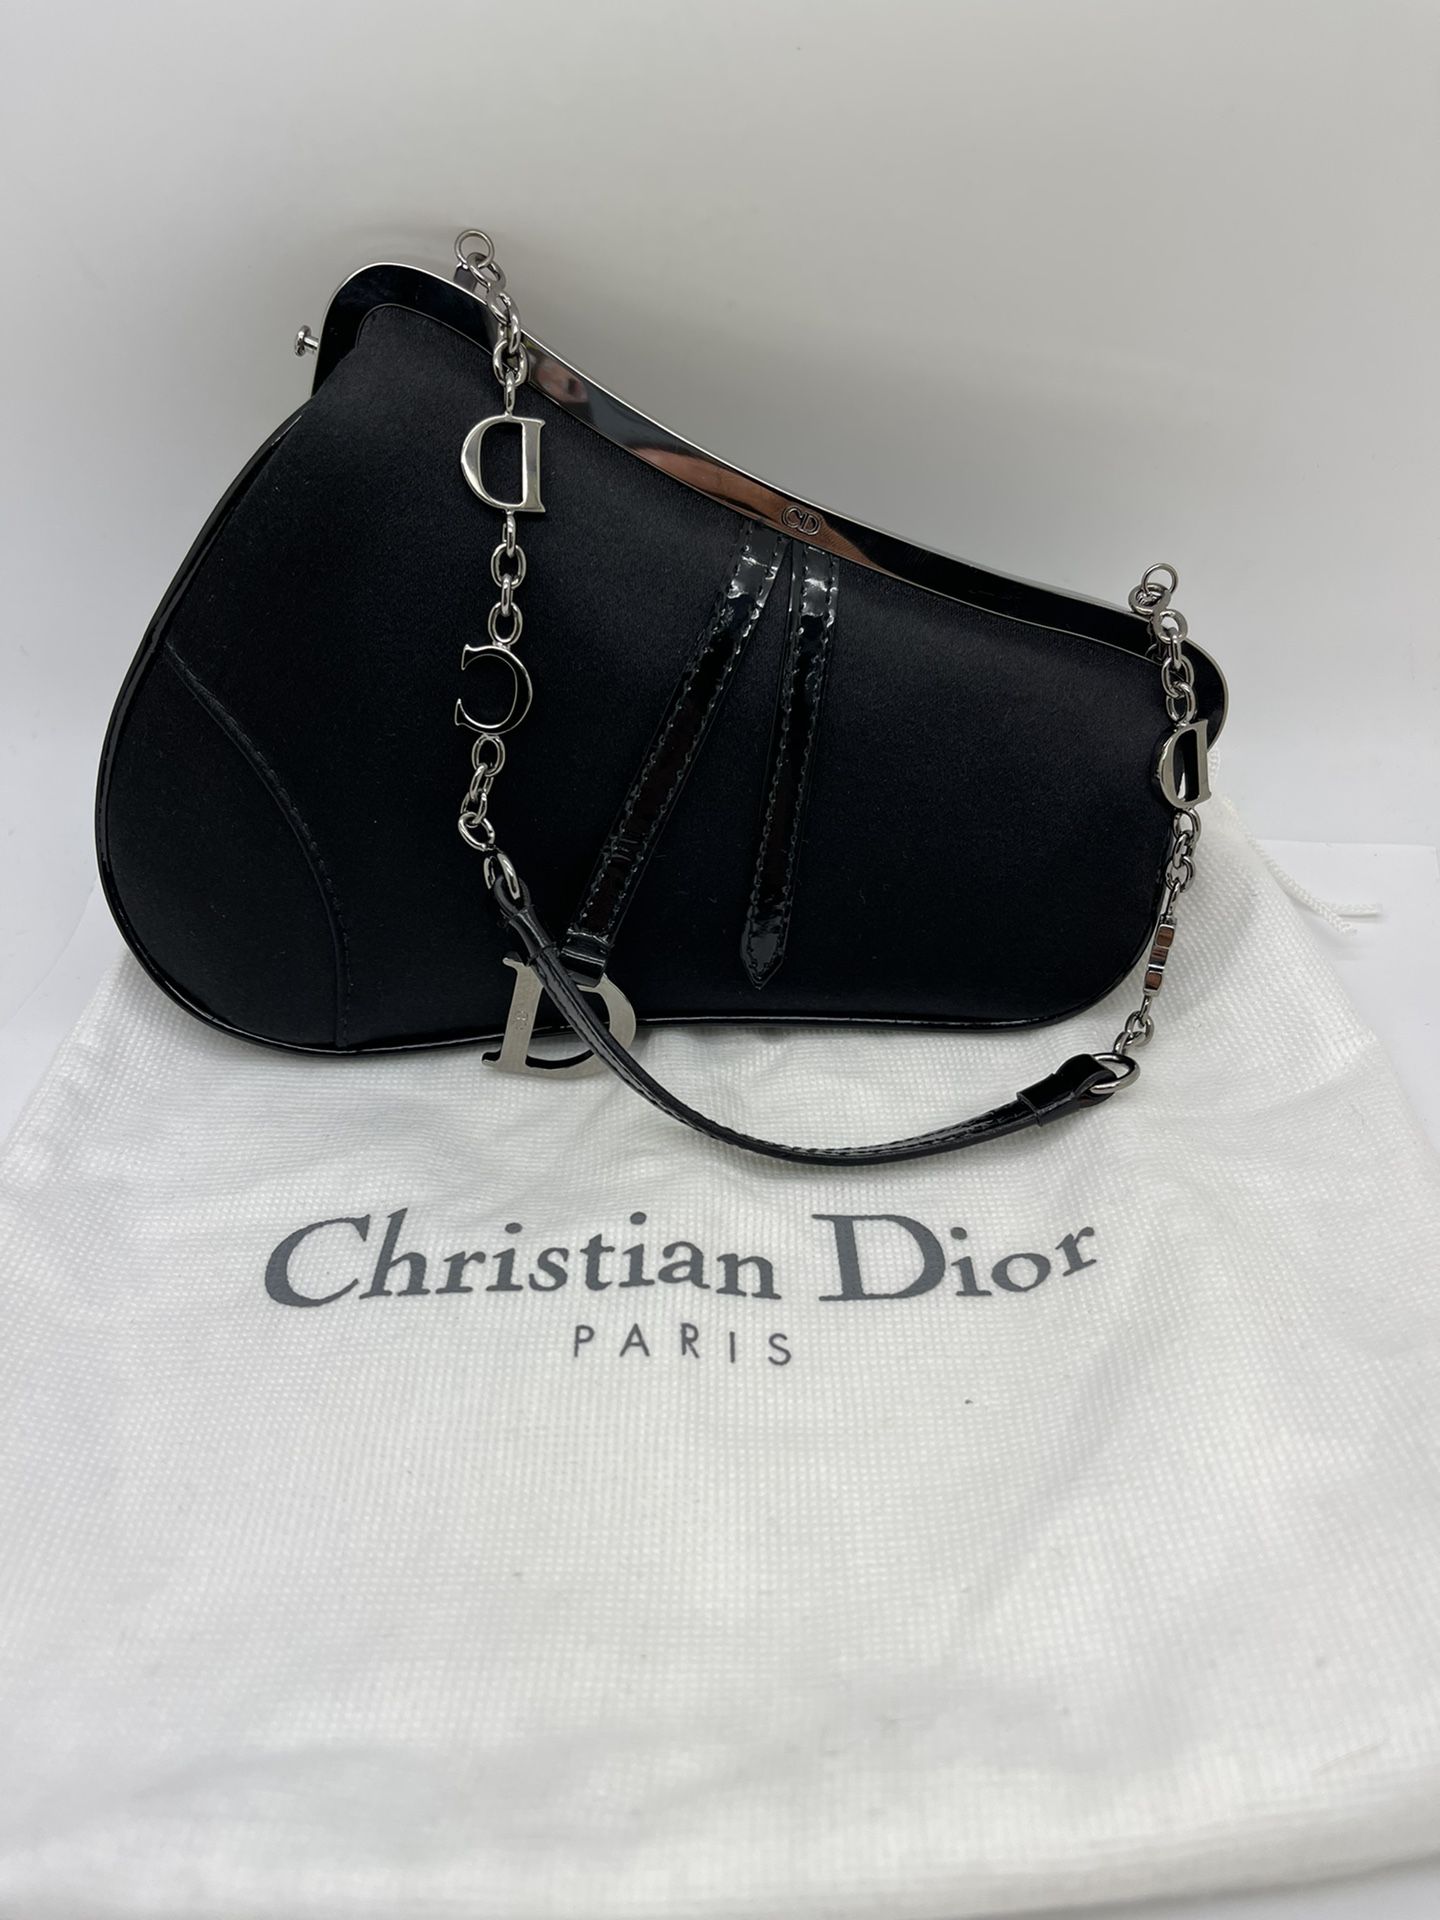 Dior Authenticated Handbag